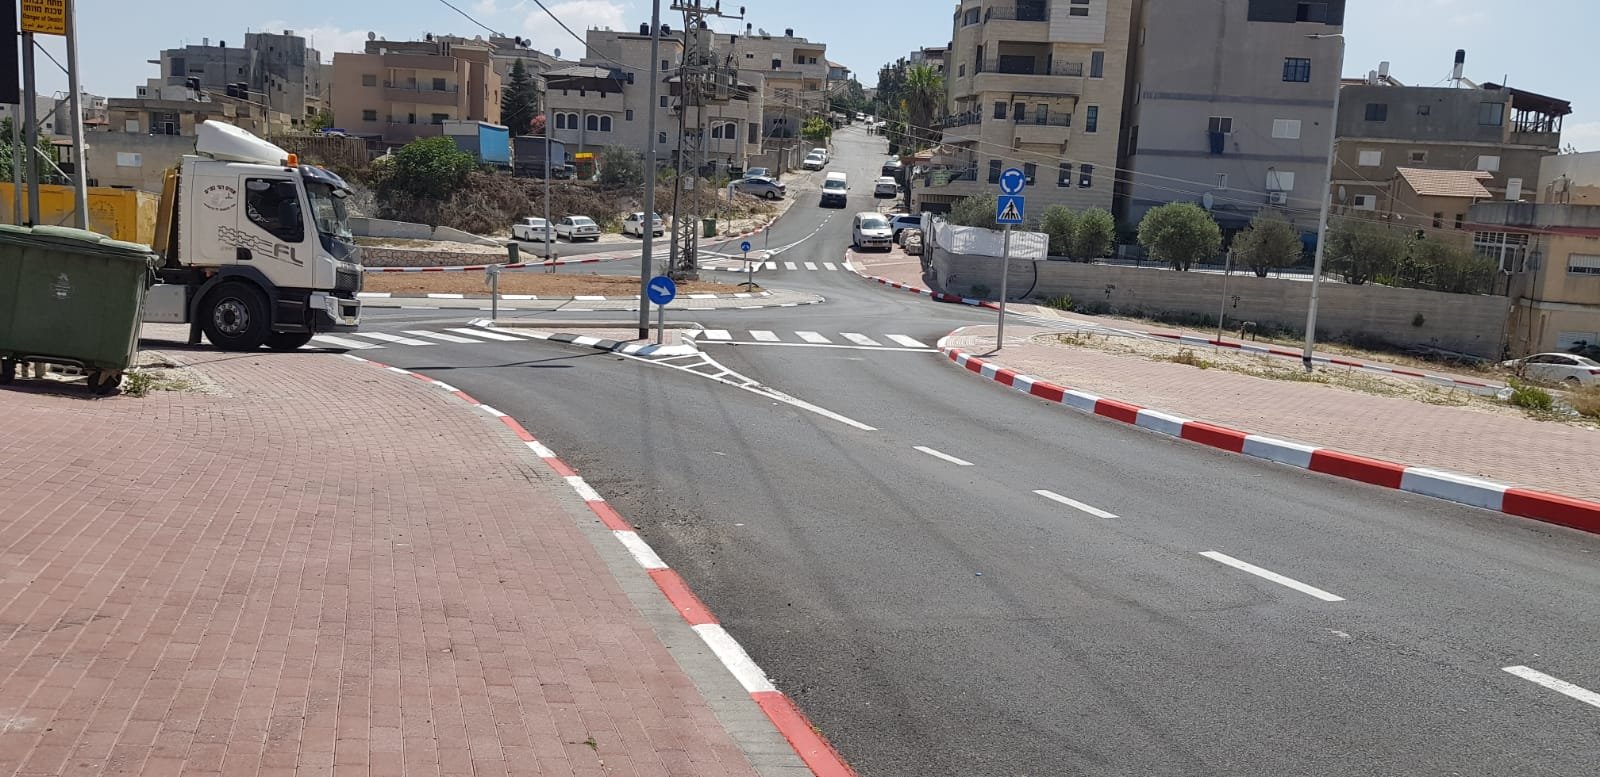 بلدية الناصرة تنفذ اعمال تعبيد وتطوير في حي كرم الصاحب-4